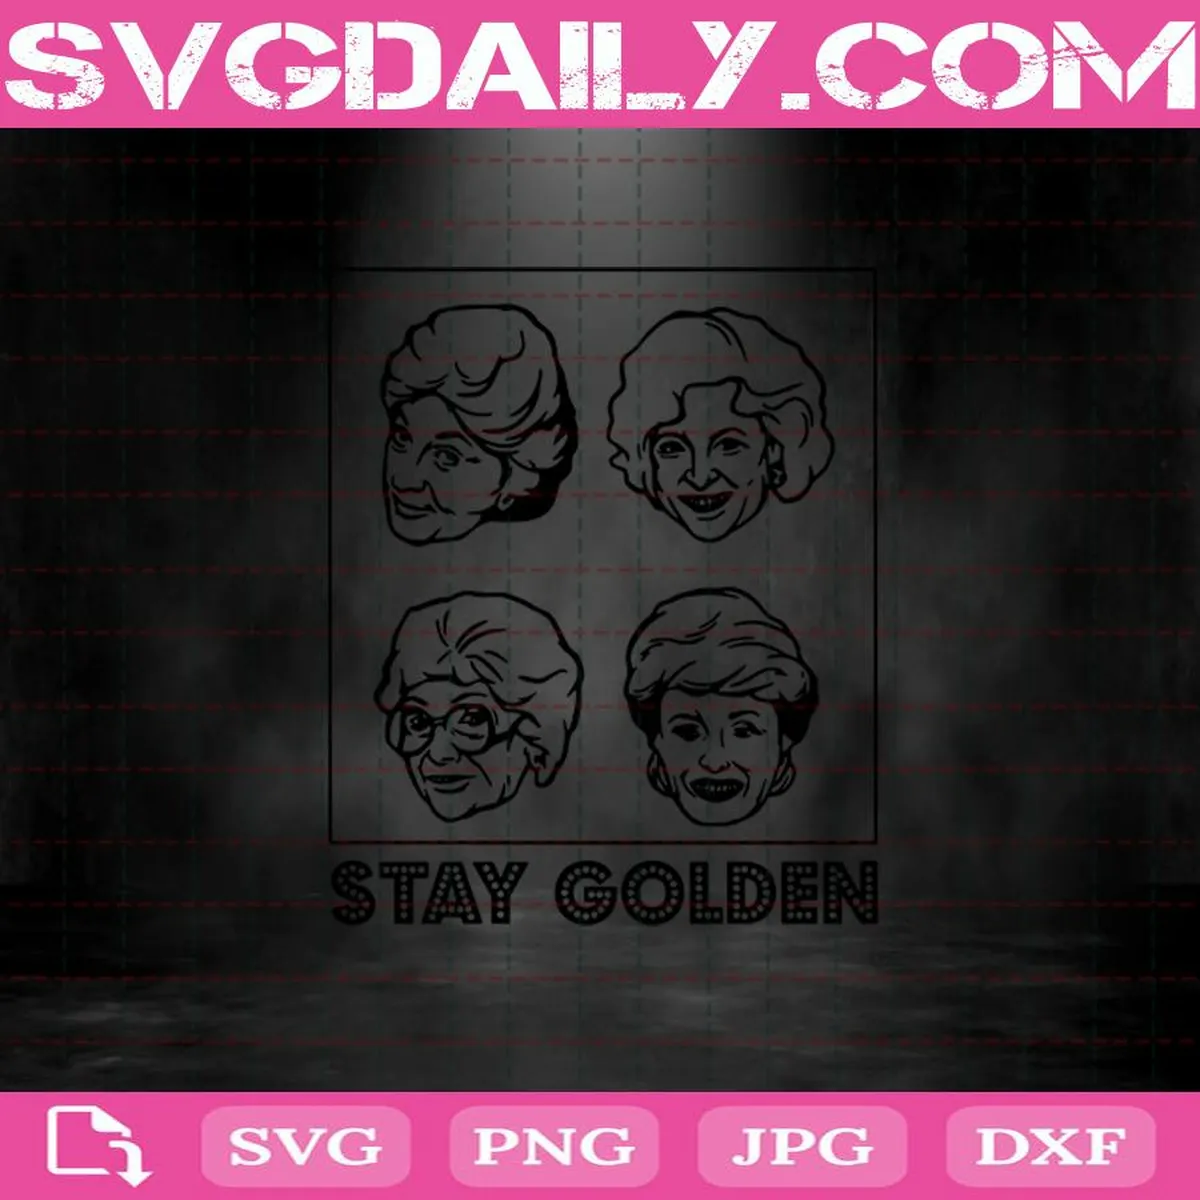 The Golden Girls Stay Golden Svg, Rose Blanche Dorothy Sophia Svg, Squad Goals Svg, Stay Golden Svg, Golden Girls Svg